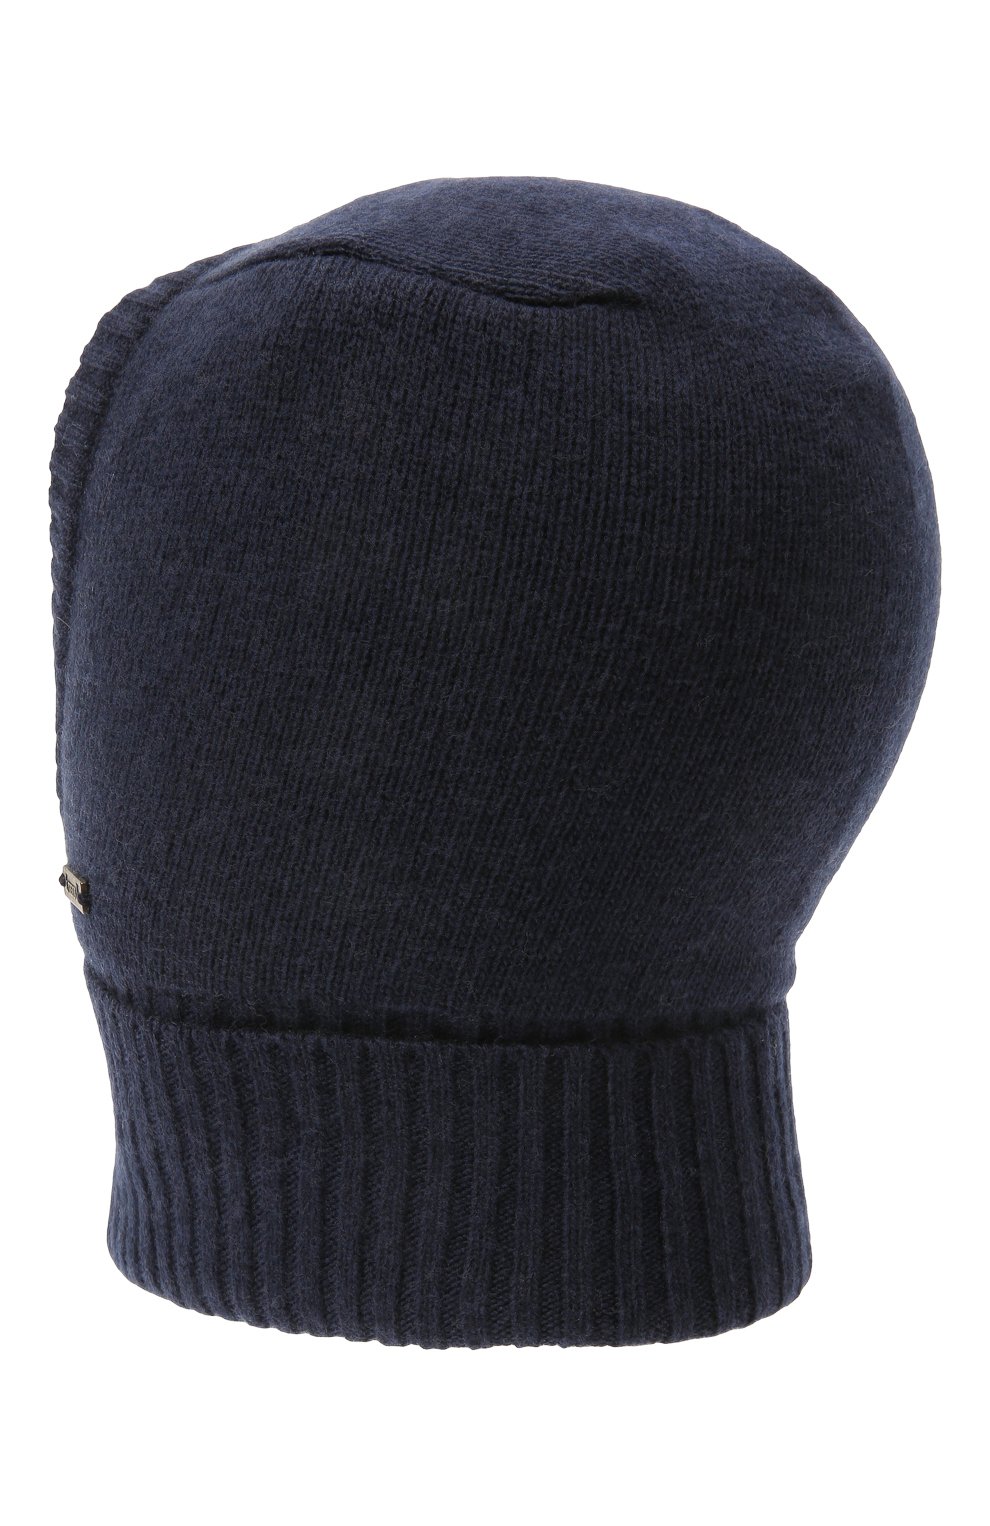 Детского шерстяная шапка-балаклава IL TRENINO темно-синего цвета, арт. CL 4101/VB | Фото 2 (Материал: Текстиль, Кашемир, Шерсть)